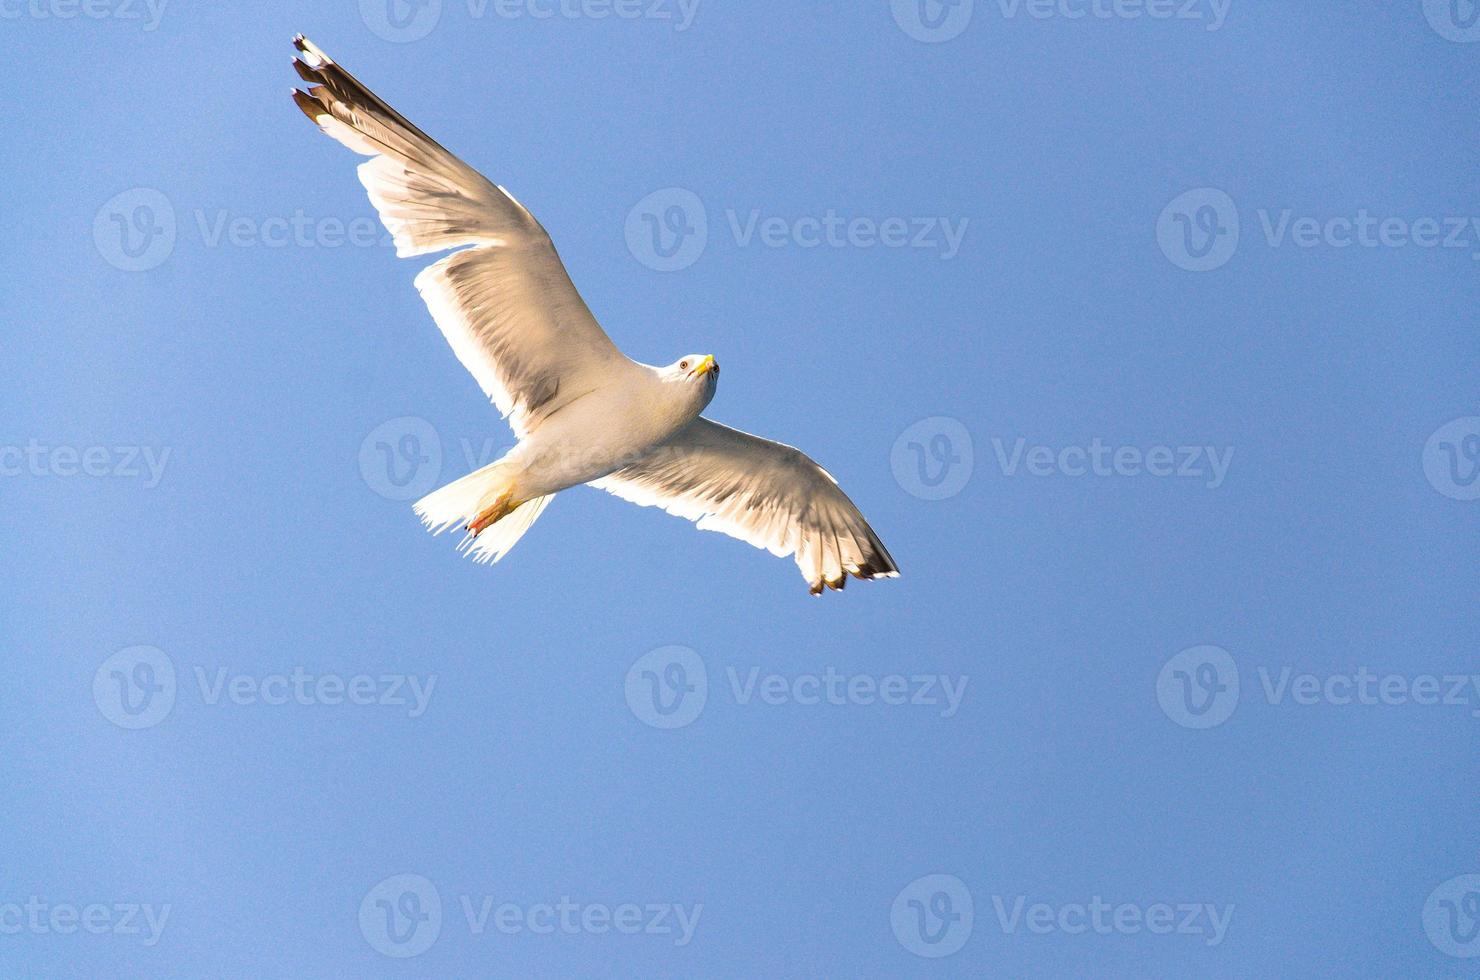 Seagulls in clear blue sky, Adriatic sea, Croatia photo